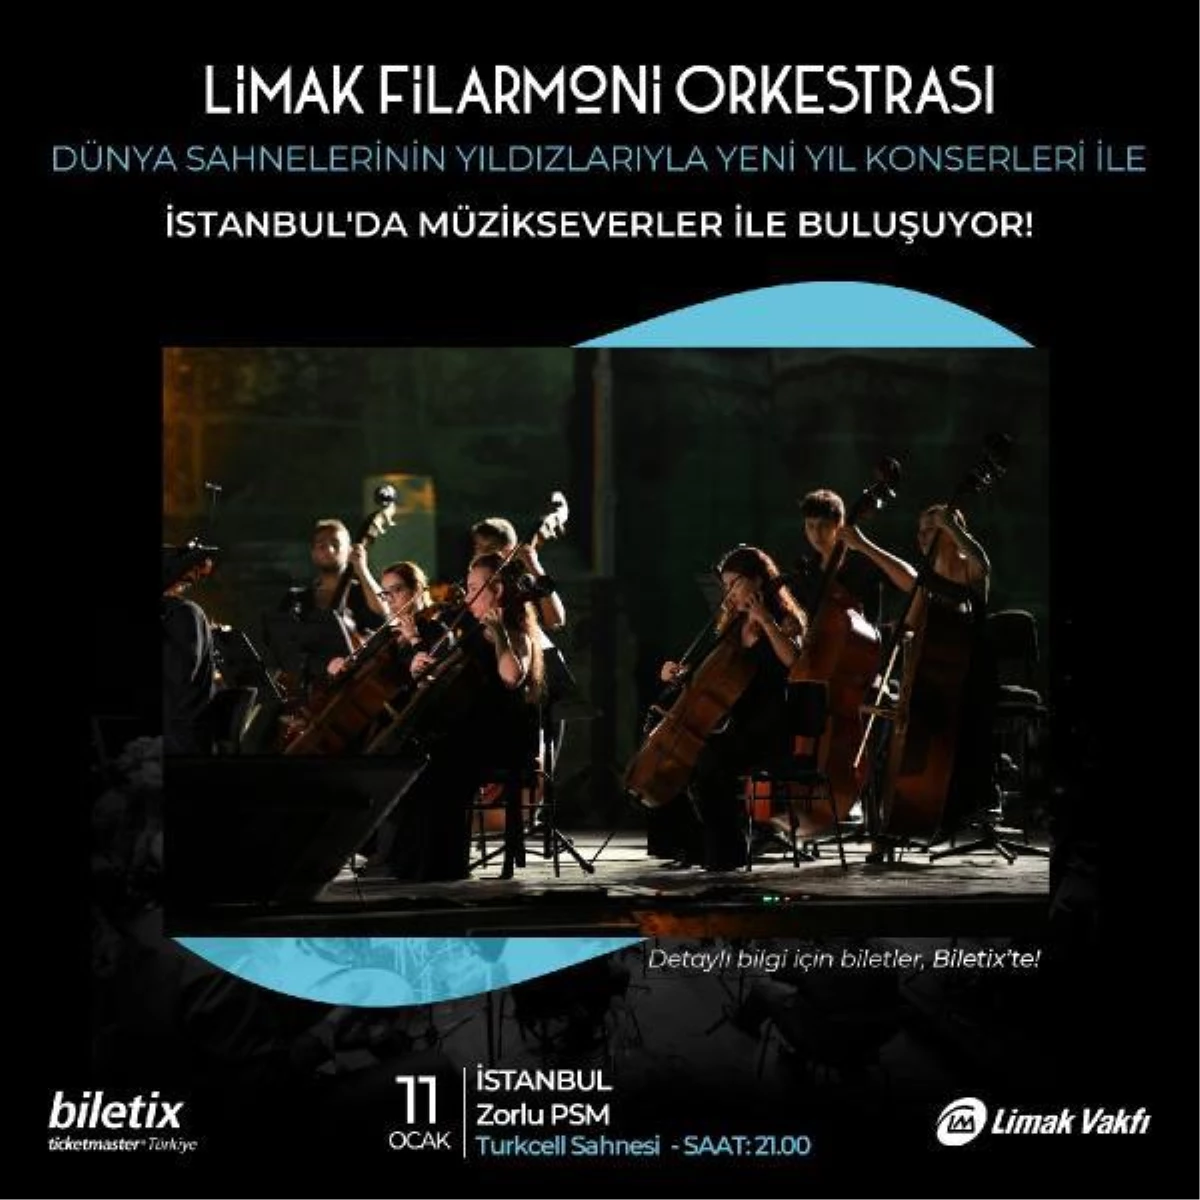 Limak Filarmoni Orkestrası\'ndan geleneksel yılbaşı konserleri